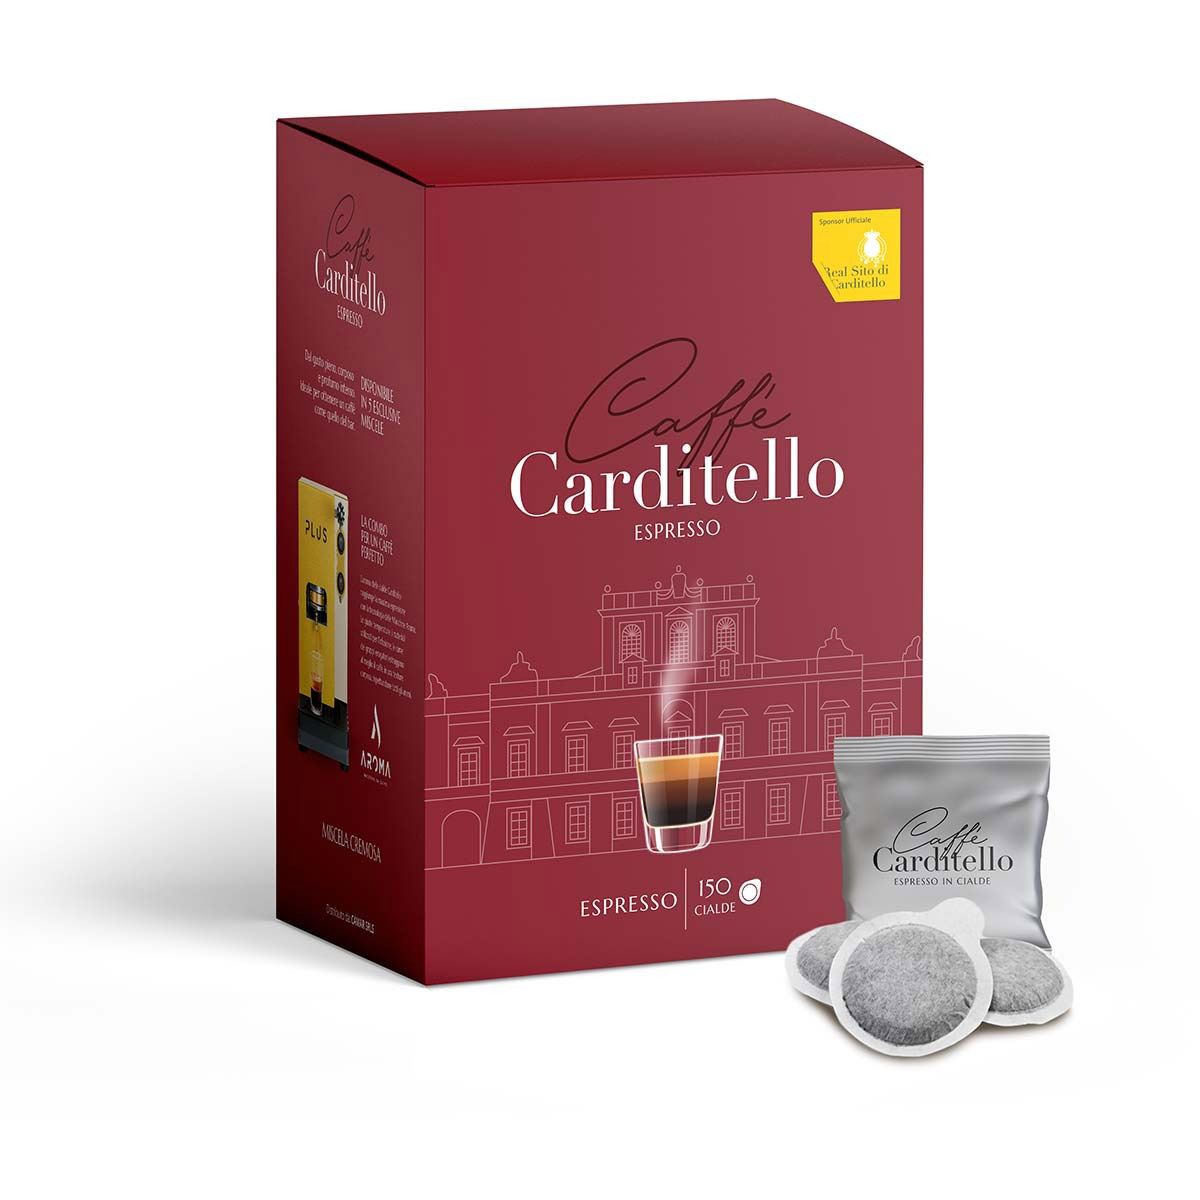 Carditello Cremoso Coffee (150 pods)